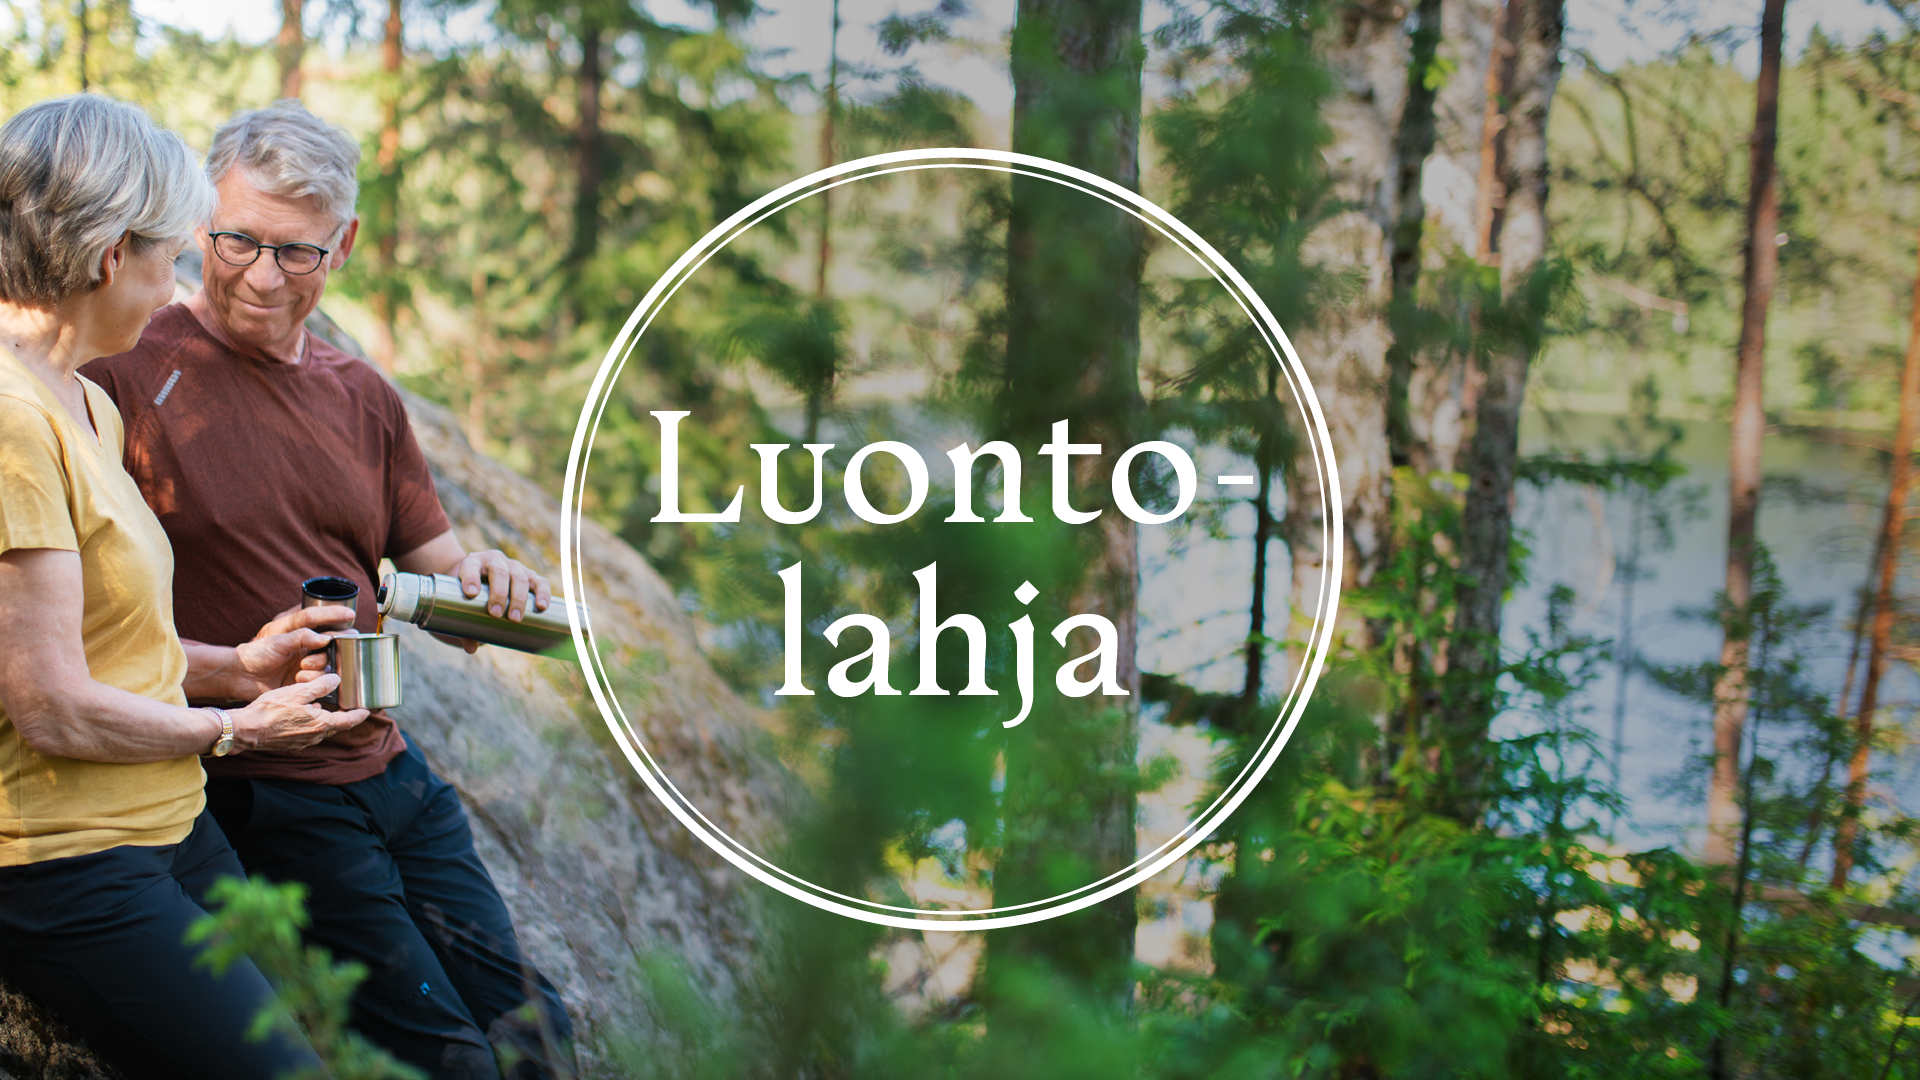 Kesäinen maisema metsästä, taustalla näkyy järvi ja sivustalla kaksi henkilöä retkeilyvaatteissa nauttivat termospullosta kahvia. Keskellä kuvaa ympyrä jonka keskellä teksti Luontolahja.